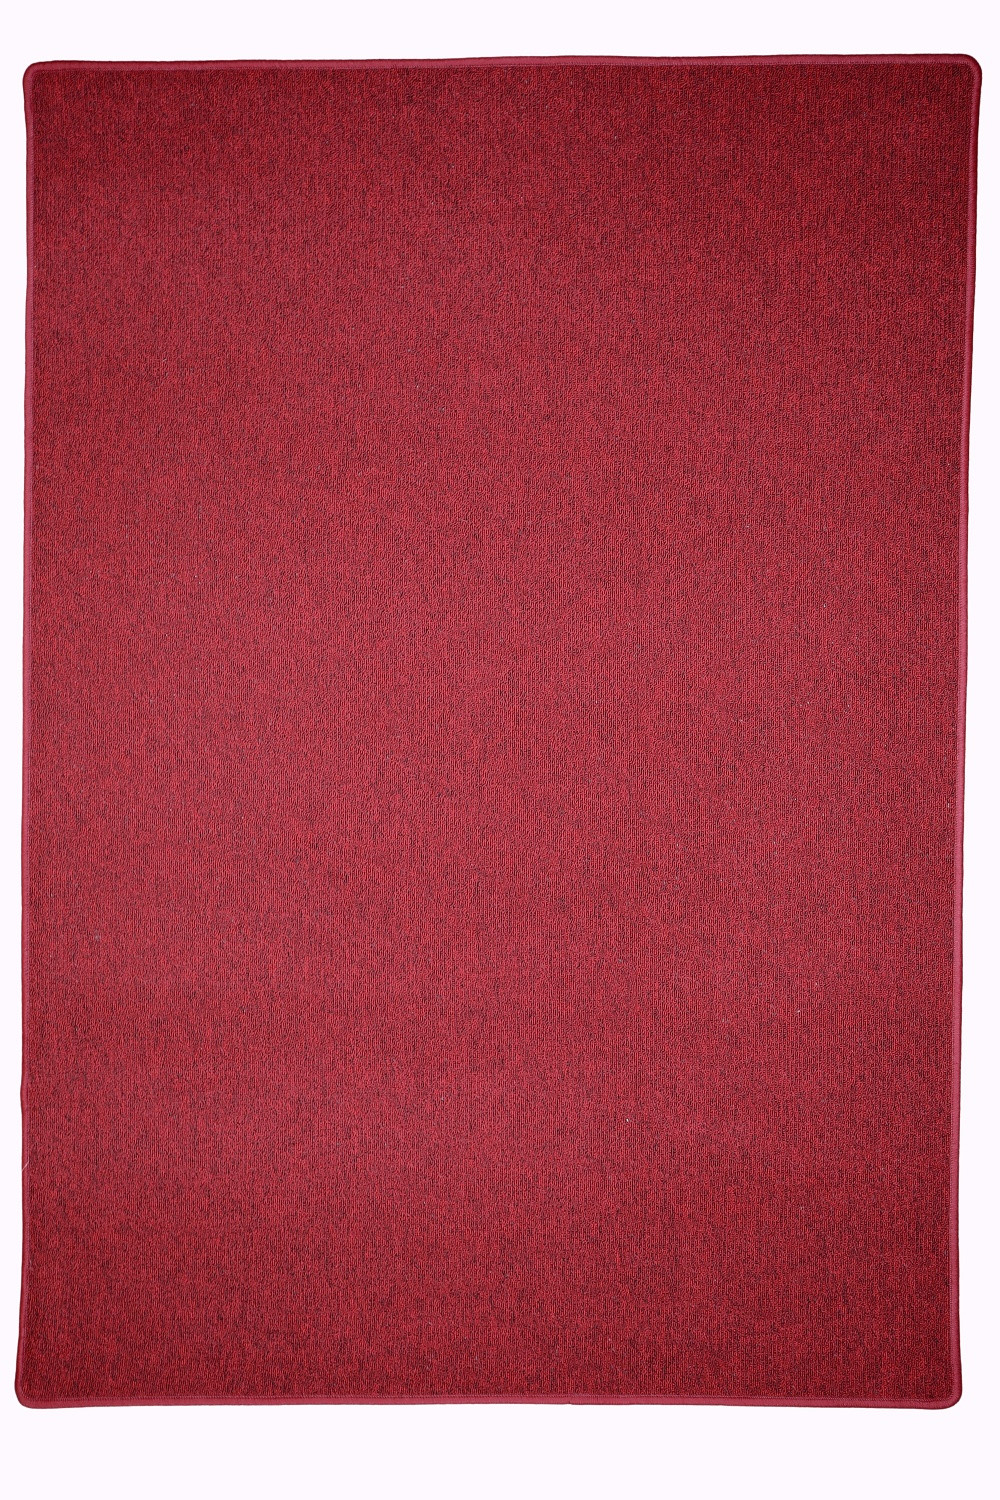 Kusový koberec Astra červená - 133x190 cm Vopi koberce 